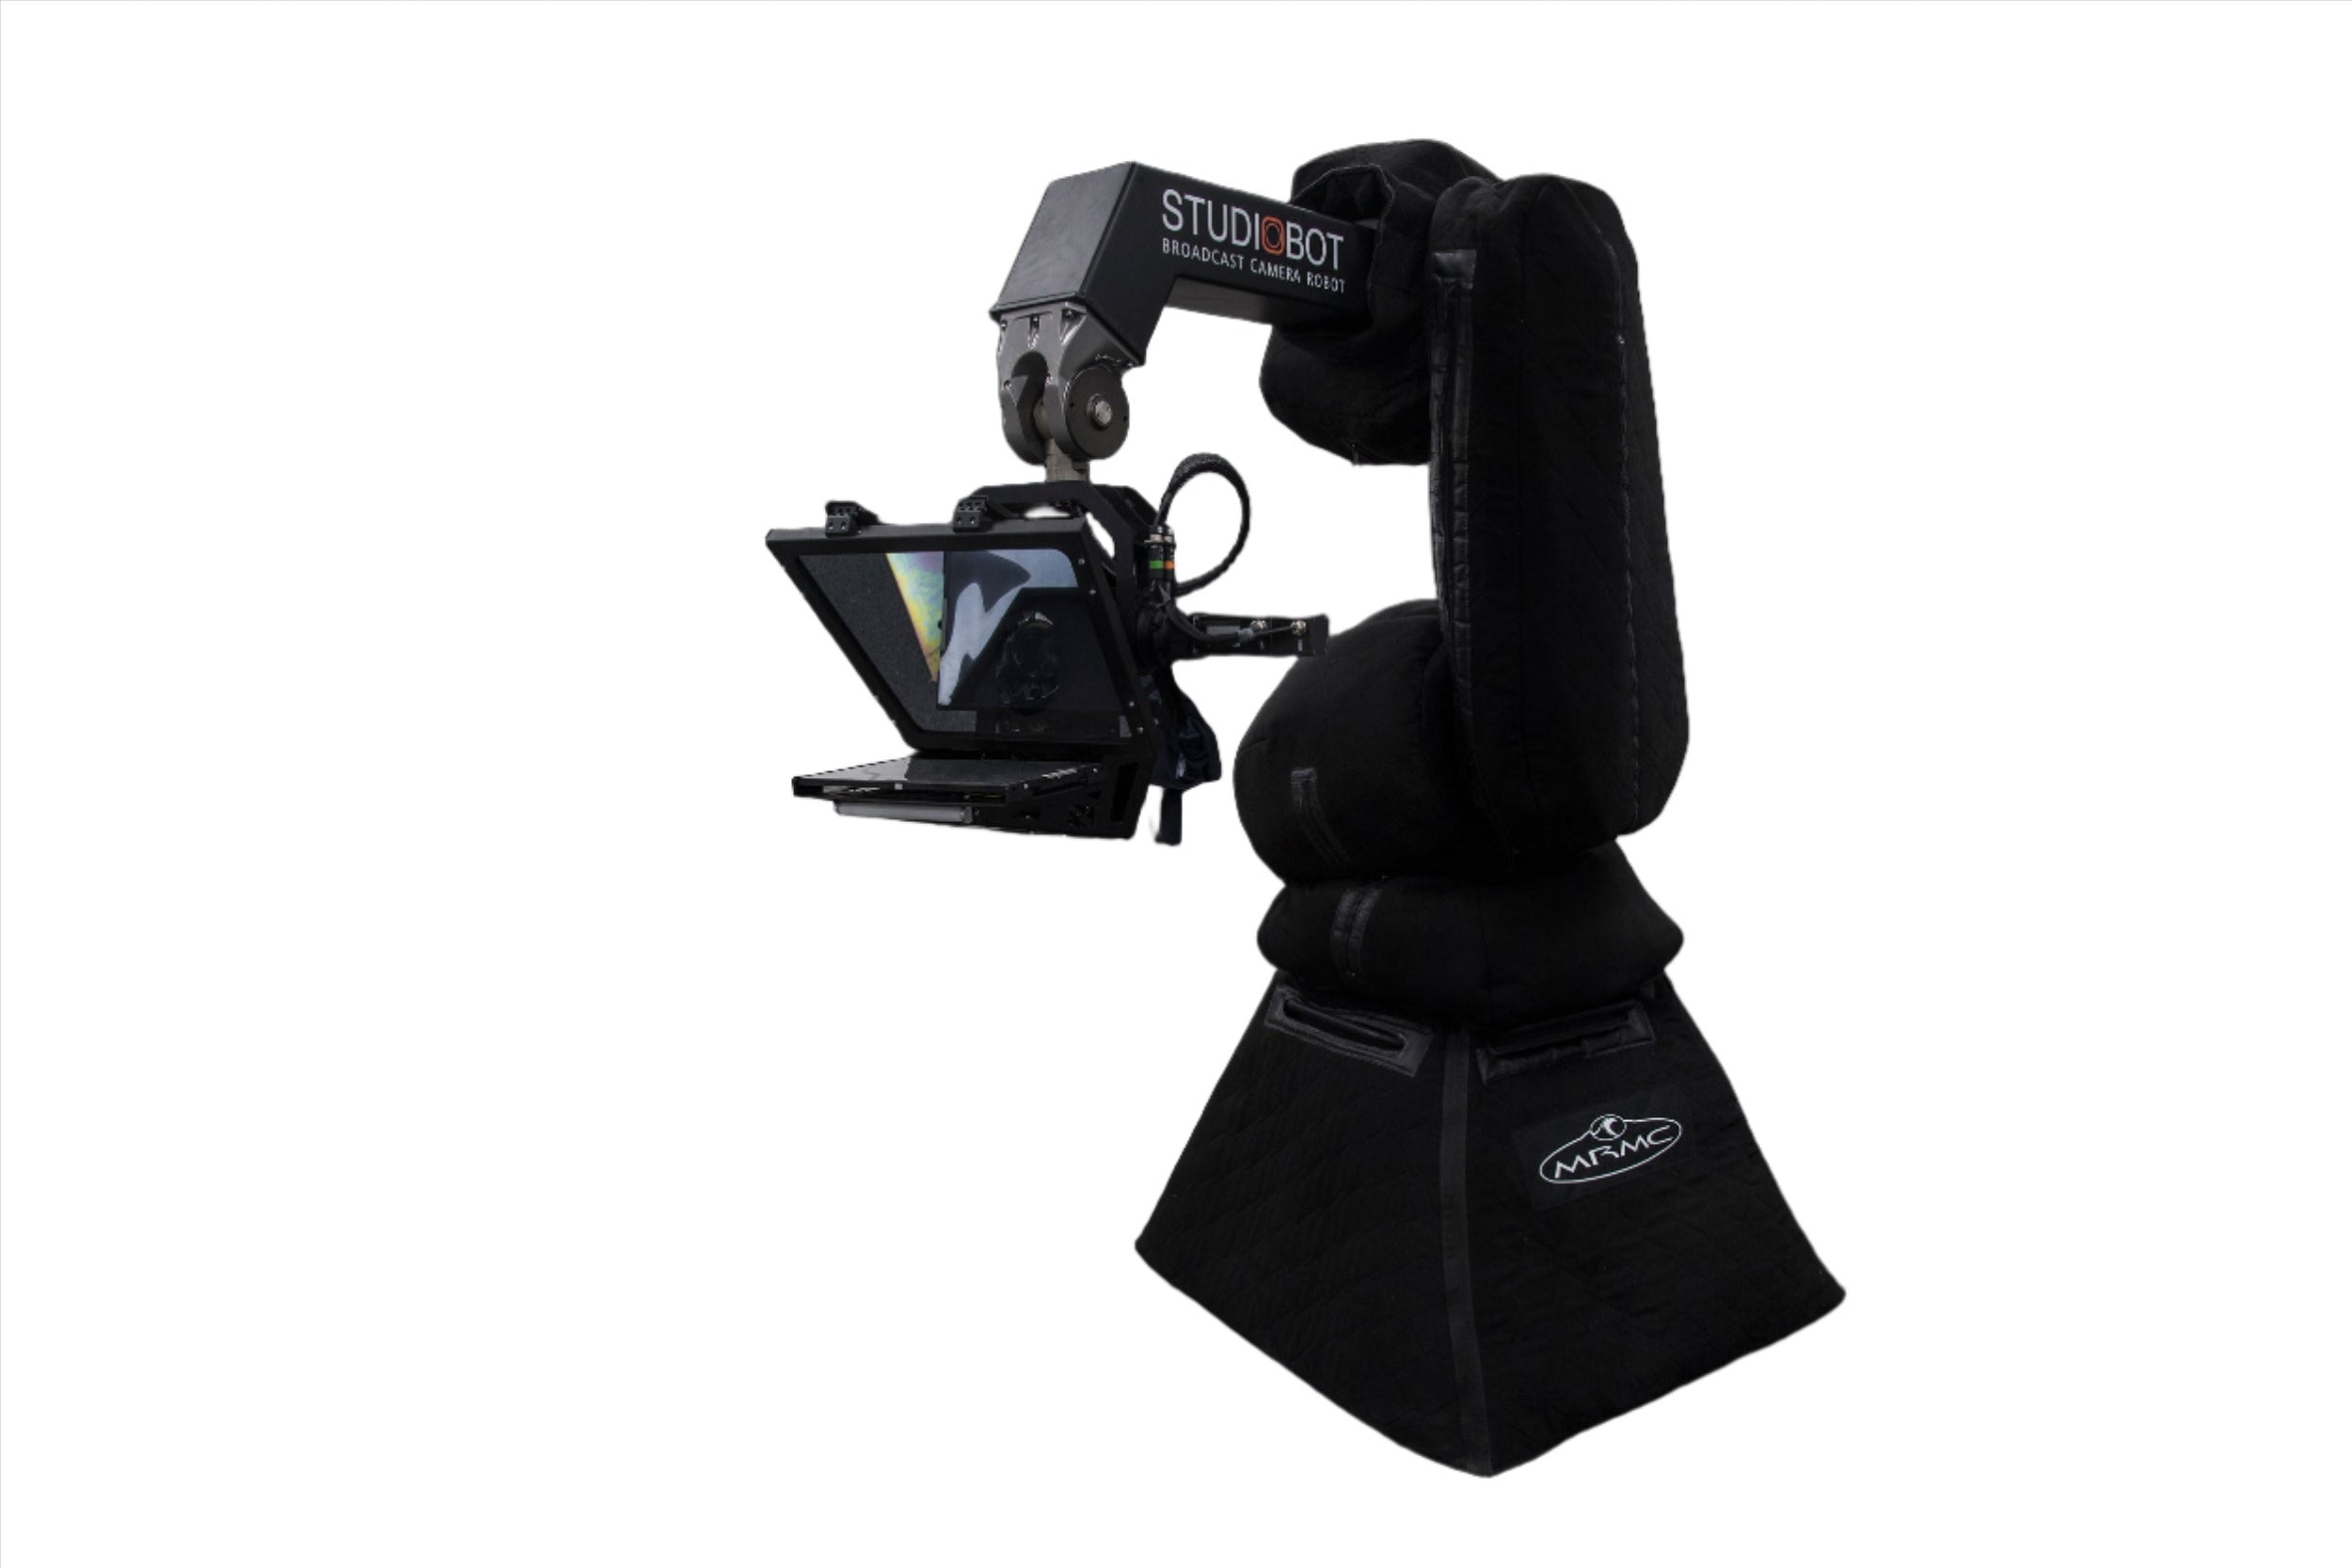 MRMC Studiobot Broadcast Camera Robot